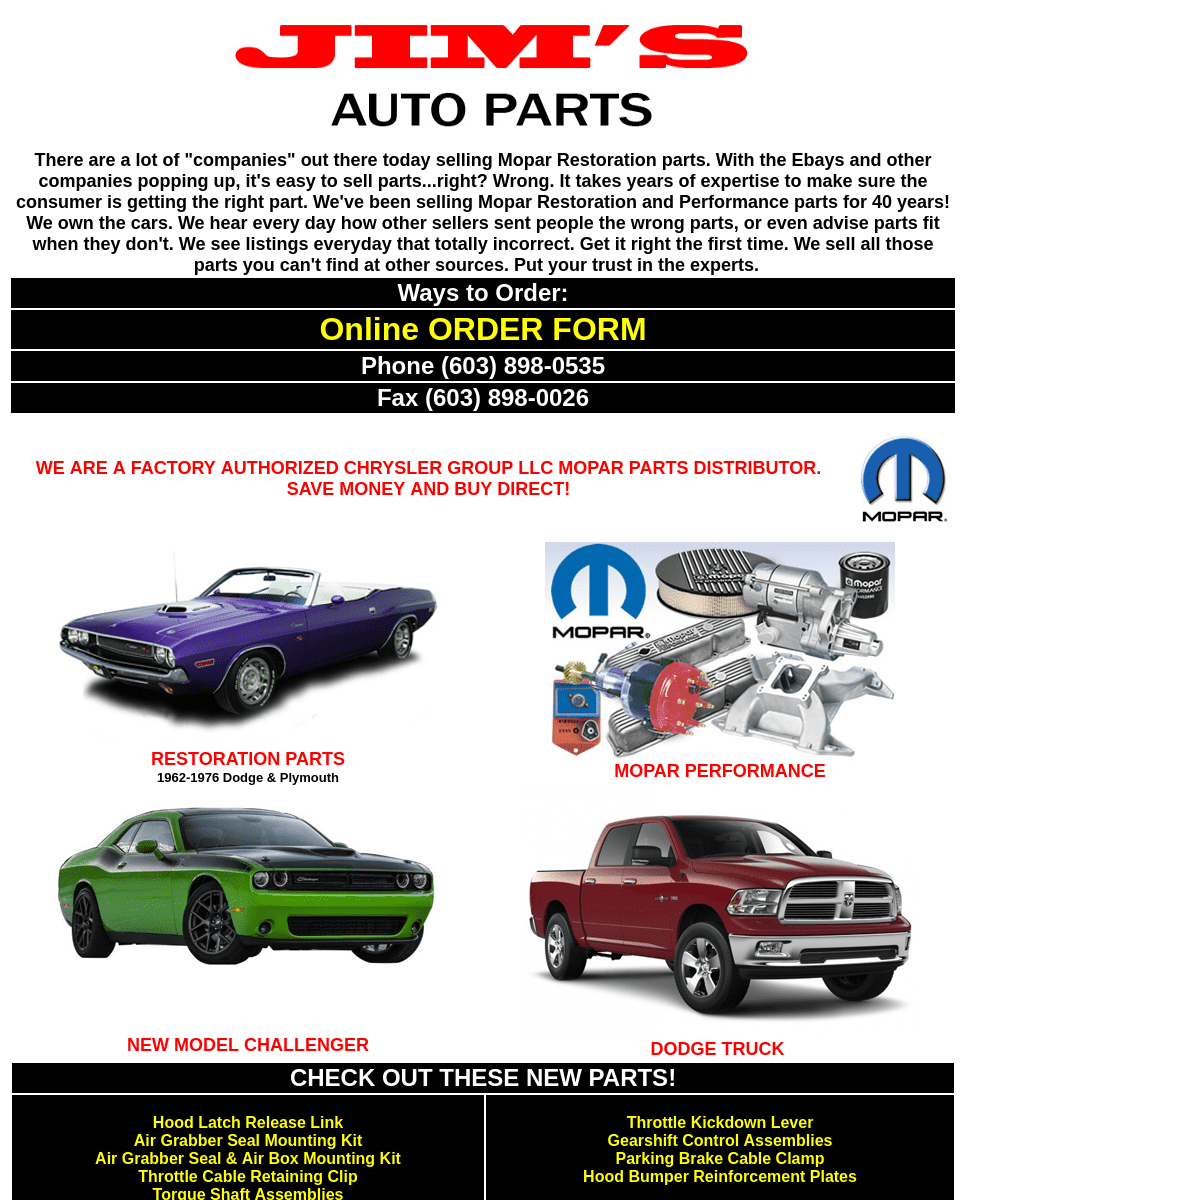 Mopar Parts | Restoration Parts | Dodge Truck Parts | Jim's Auto Parts